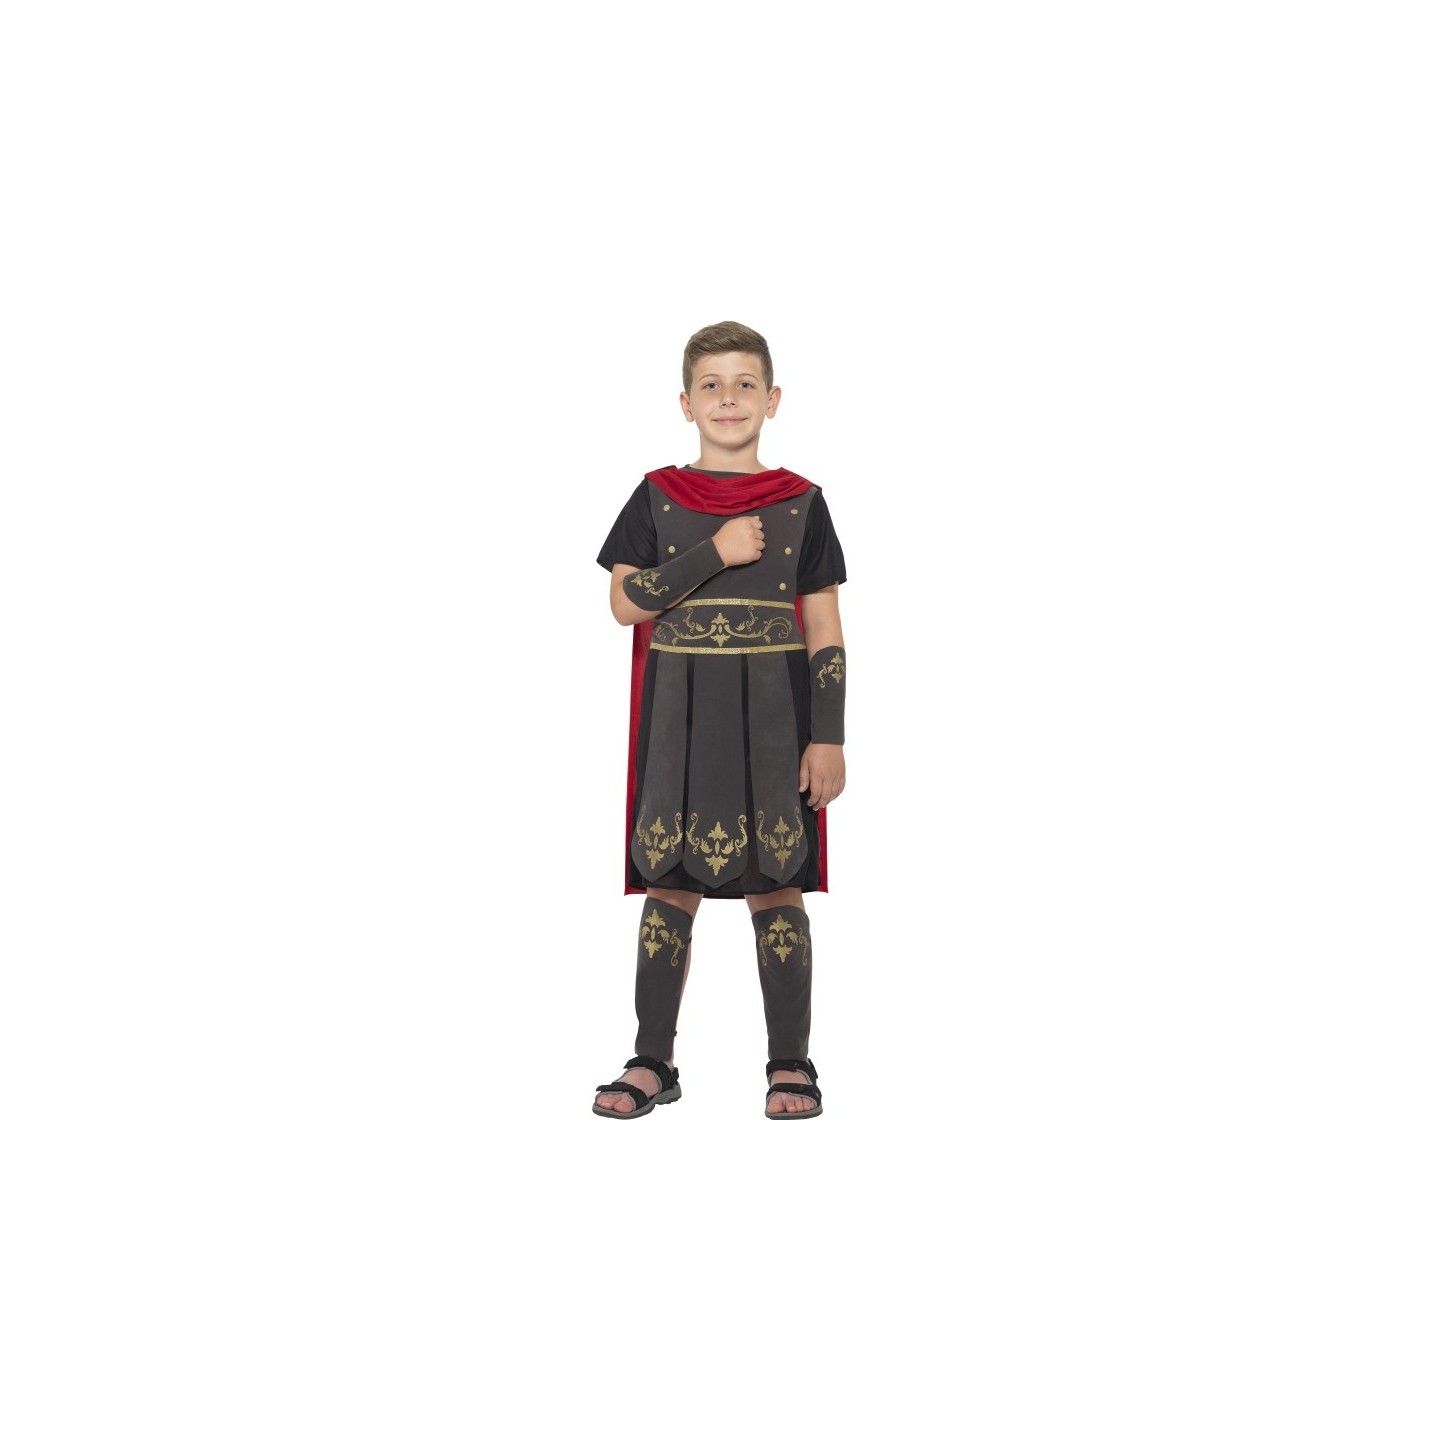 Romeinse soldaat kostuum kind carnaval